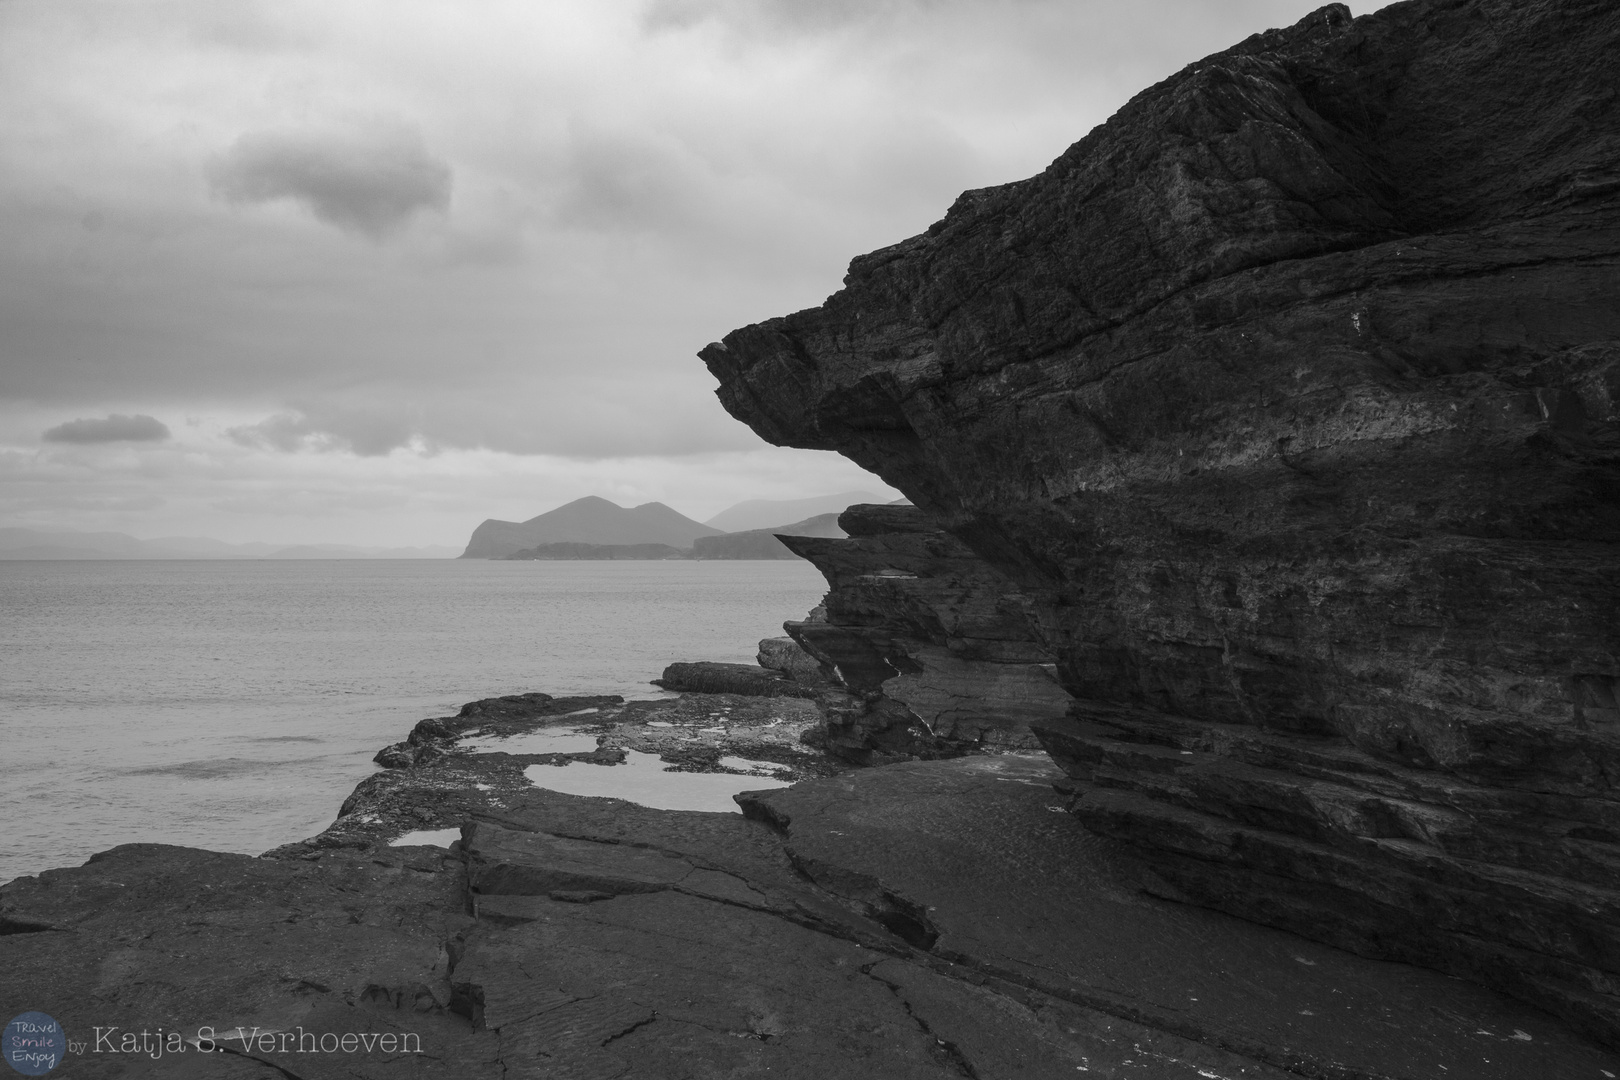 Heavy rocks on Valetia Island, Ireland